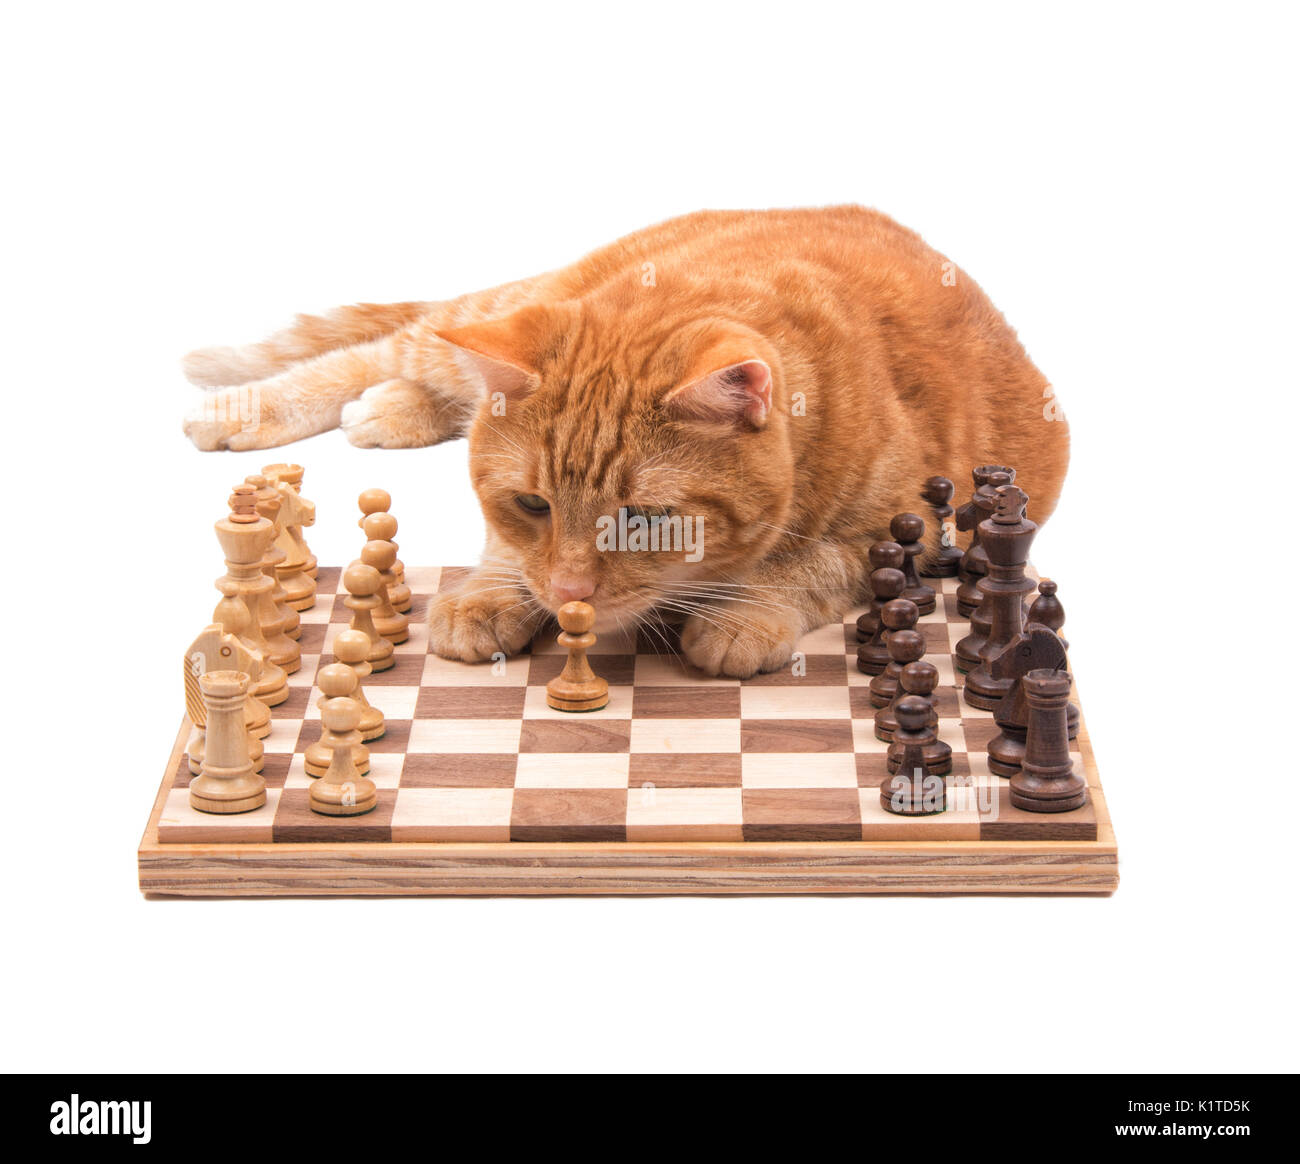 Chat tigré Orange l'inspection d'un pice d'échecs près, isolated on white Banque D'Images